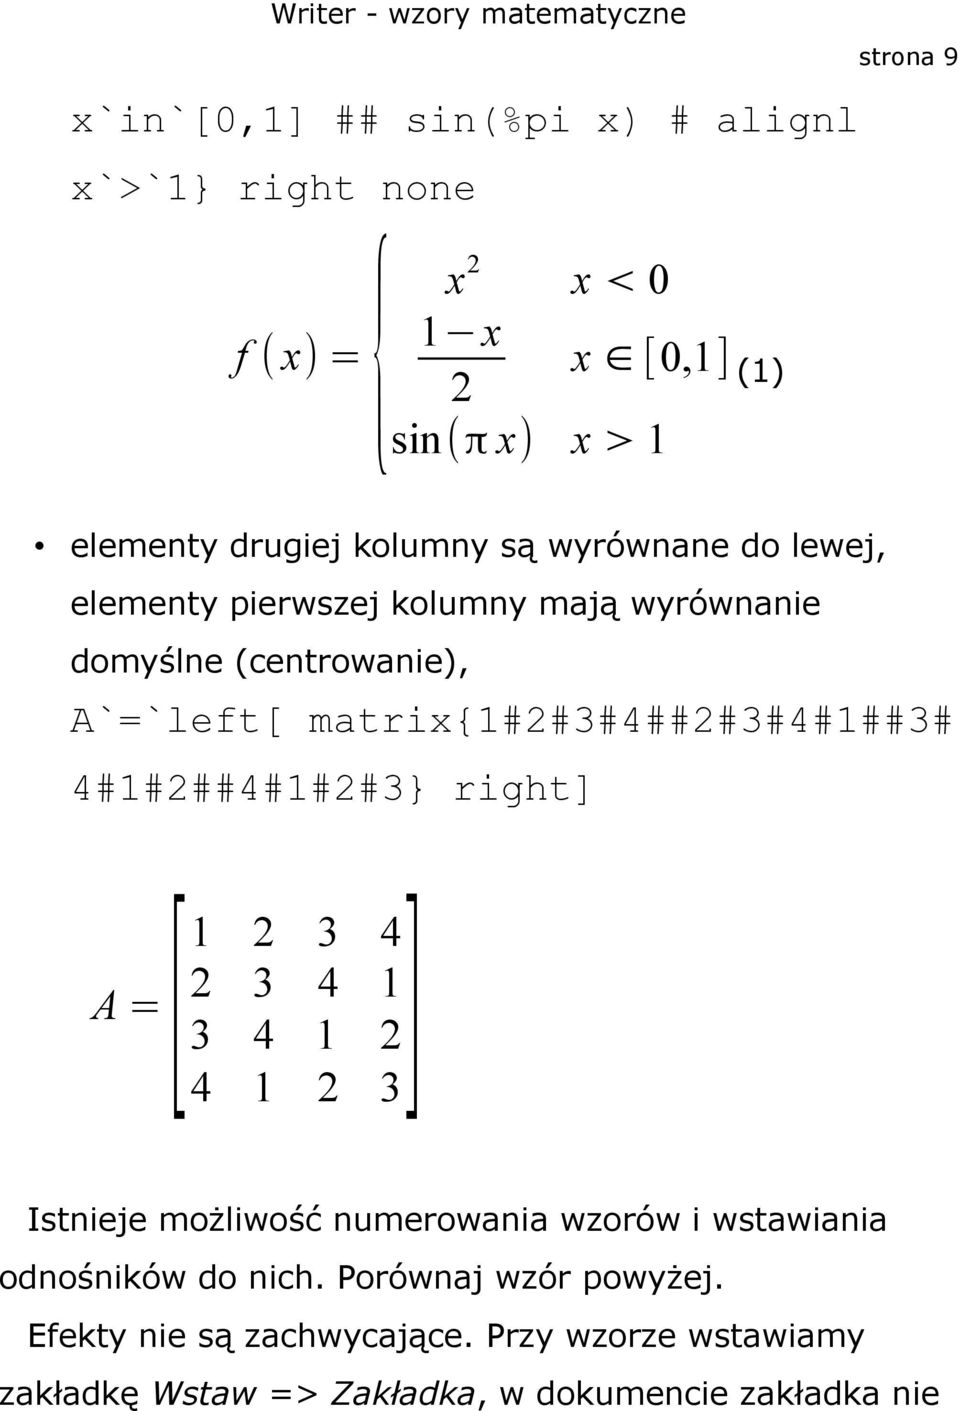 matrix{1#2#3#4##2#3#4#1##3# 4#1#2##4#1#2#3} right] 2 3 4 2 3 4 1 A =[1 3] 3 4 1 2 4 1 2 Istnieje możliwość numerowania wzorów i